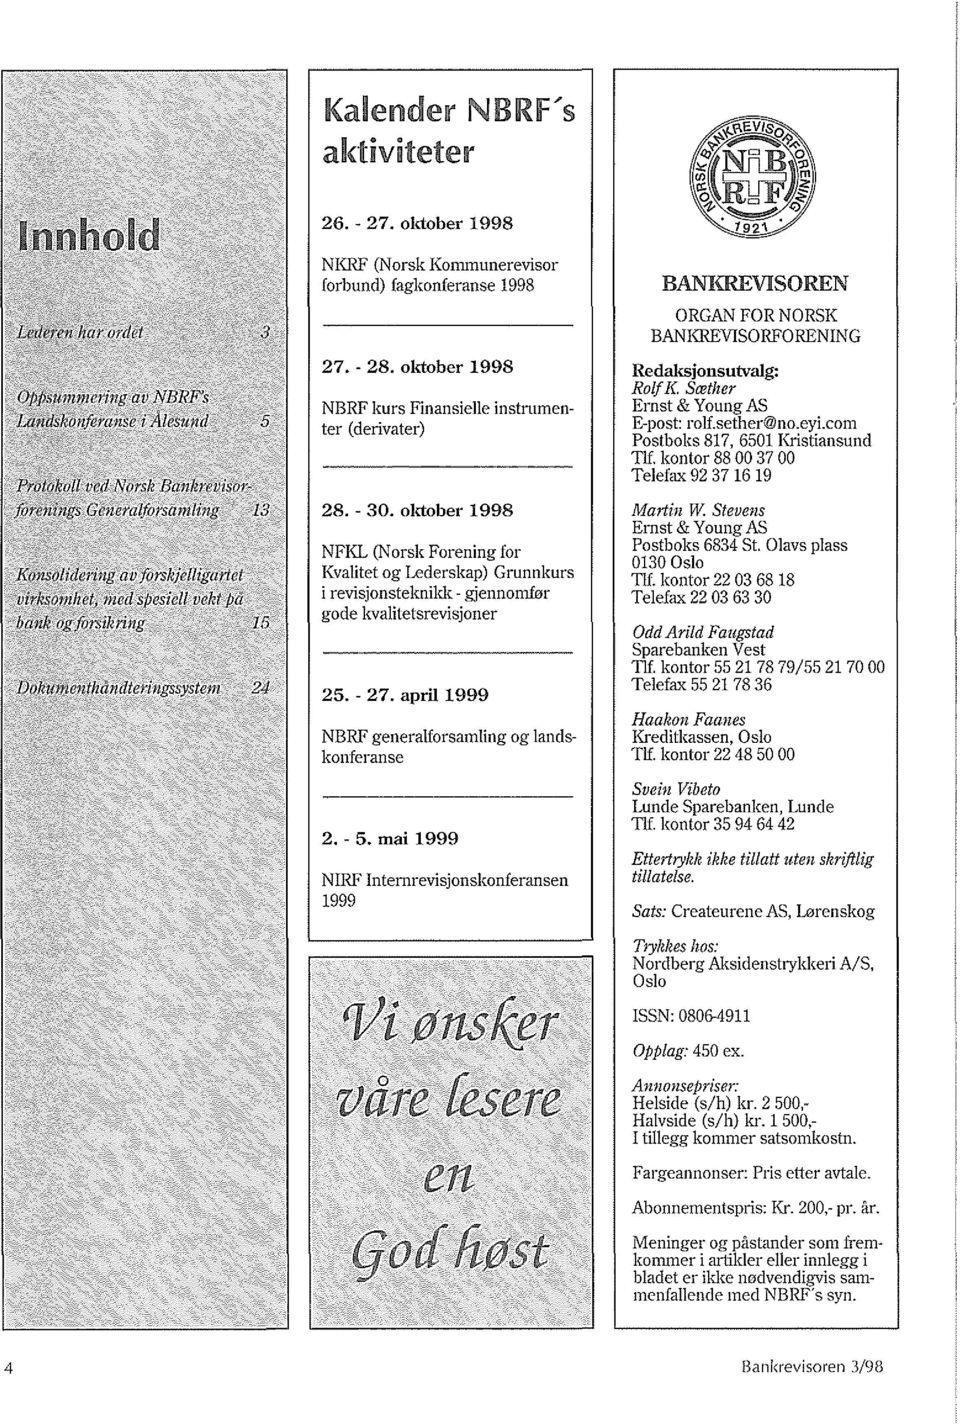 rnai 1999 NIRF Internrevisjonskonferansen 1999 O/iffns~r vare fesere en BANKREVISOREN ORGAN FOR NORSK BANKREVISORFORENING Redaksjonsutvalg: Rolf K. Swllter Ernst & Young AS E-pos!: rolf.sether@no.eyi.